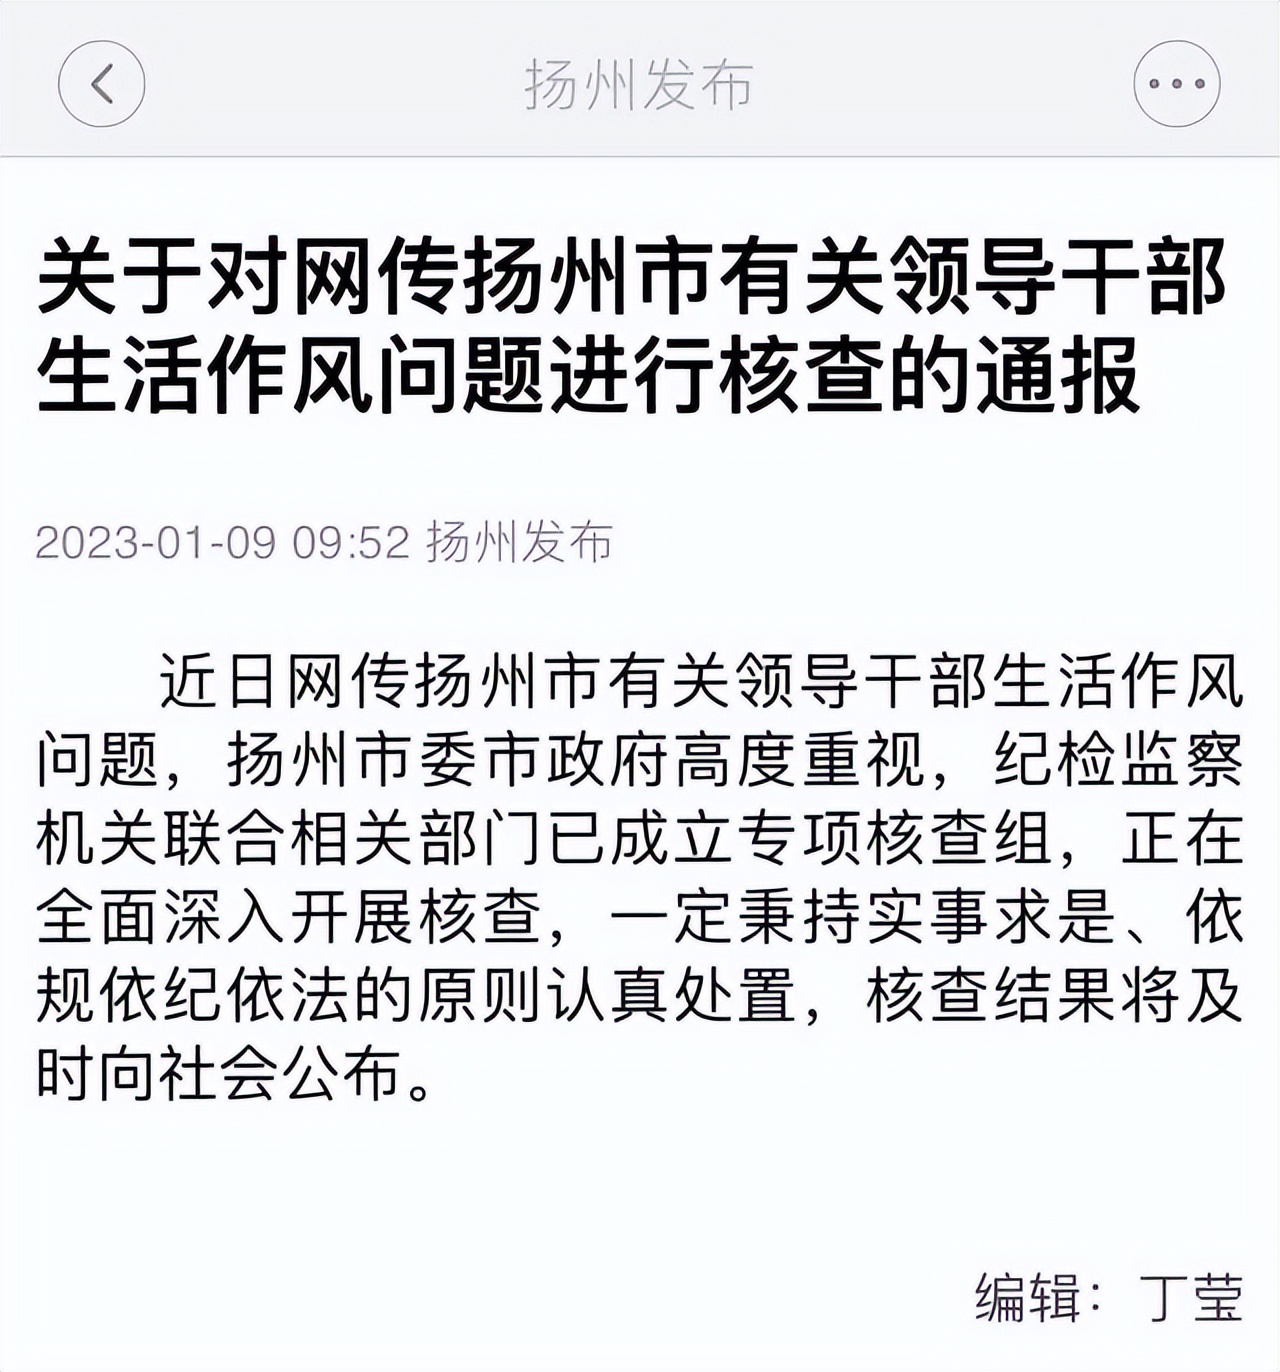 副市长与女官员有作风问题,扬州官方通报